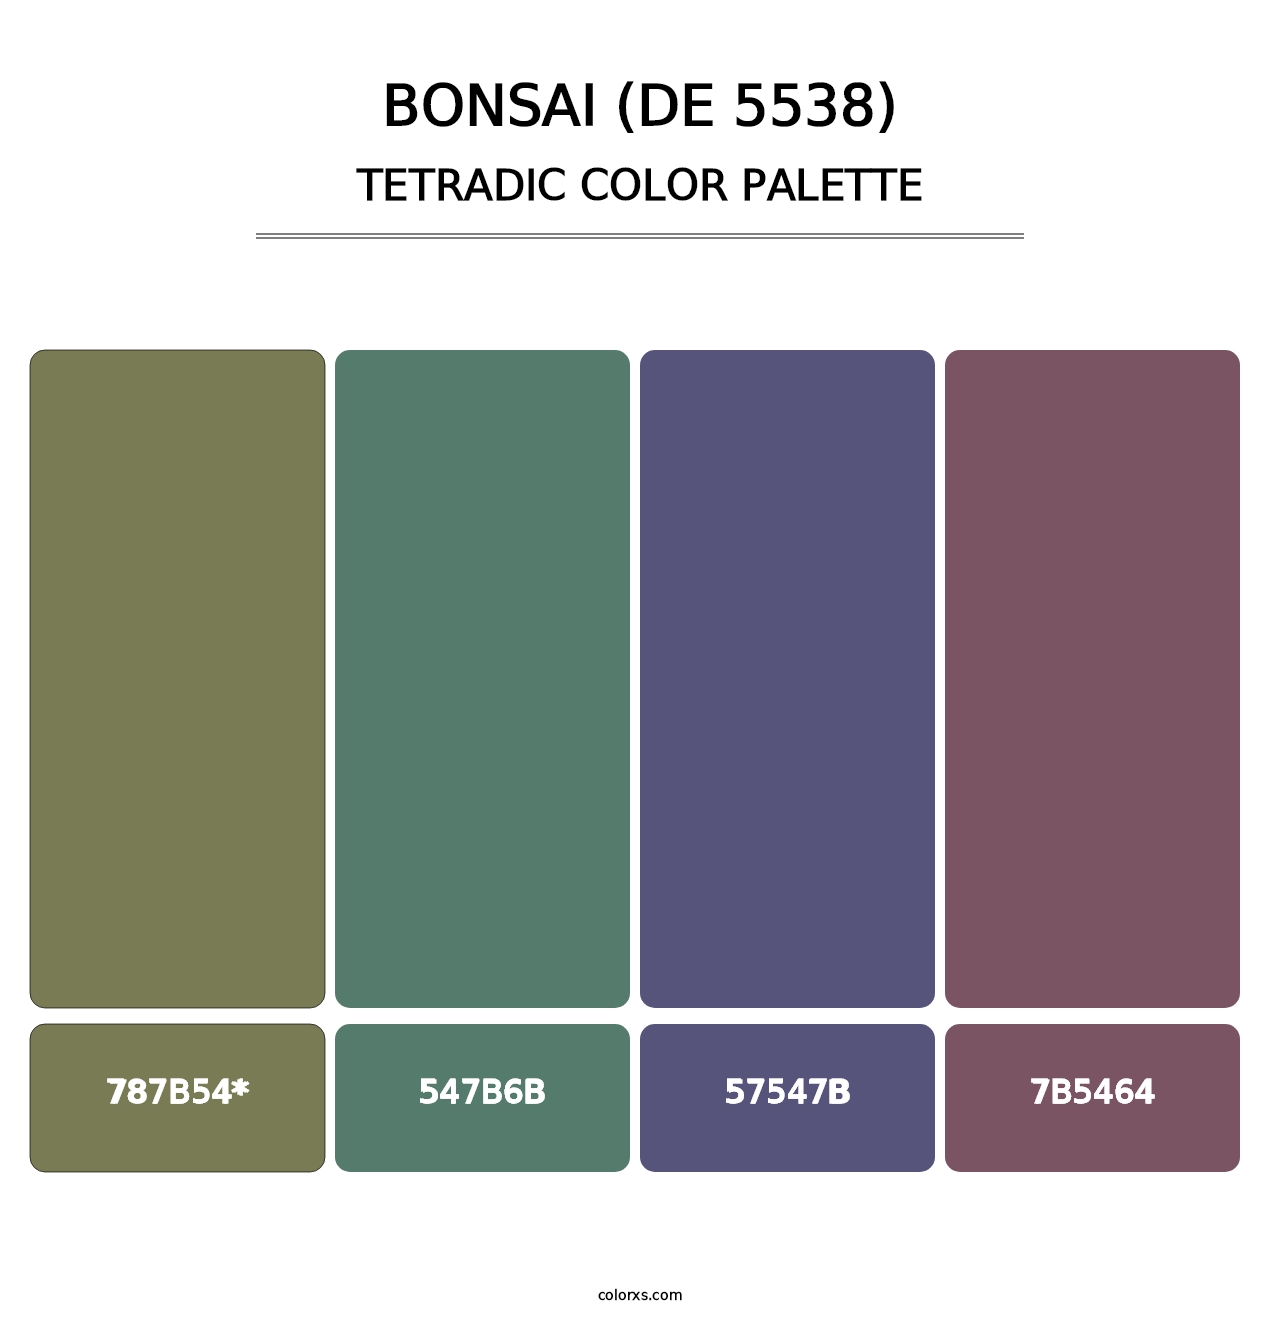 Bonsai (DE 5538) - Tetradic Color Palette